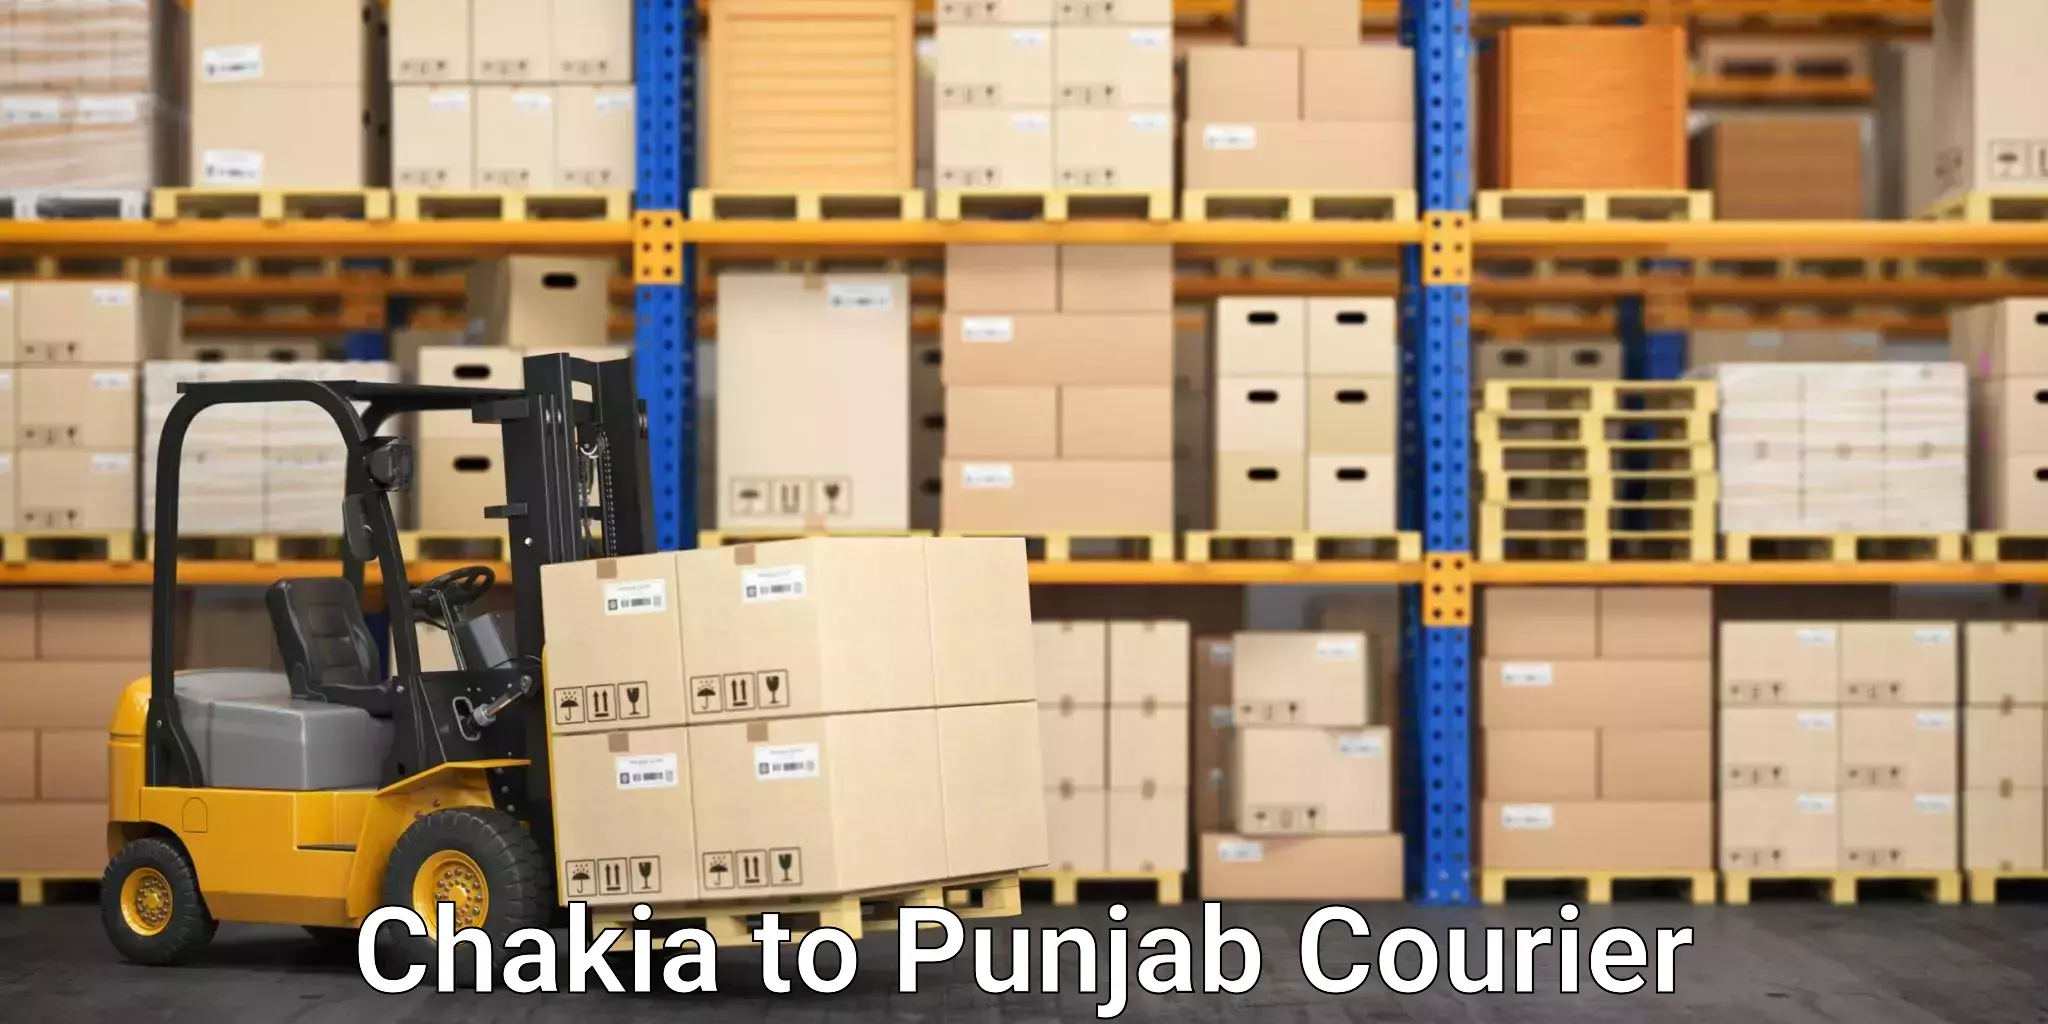 Furniture moving service Chakia to Punjab